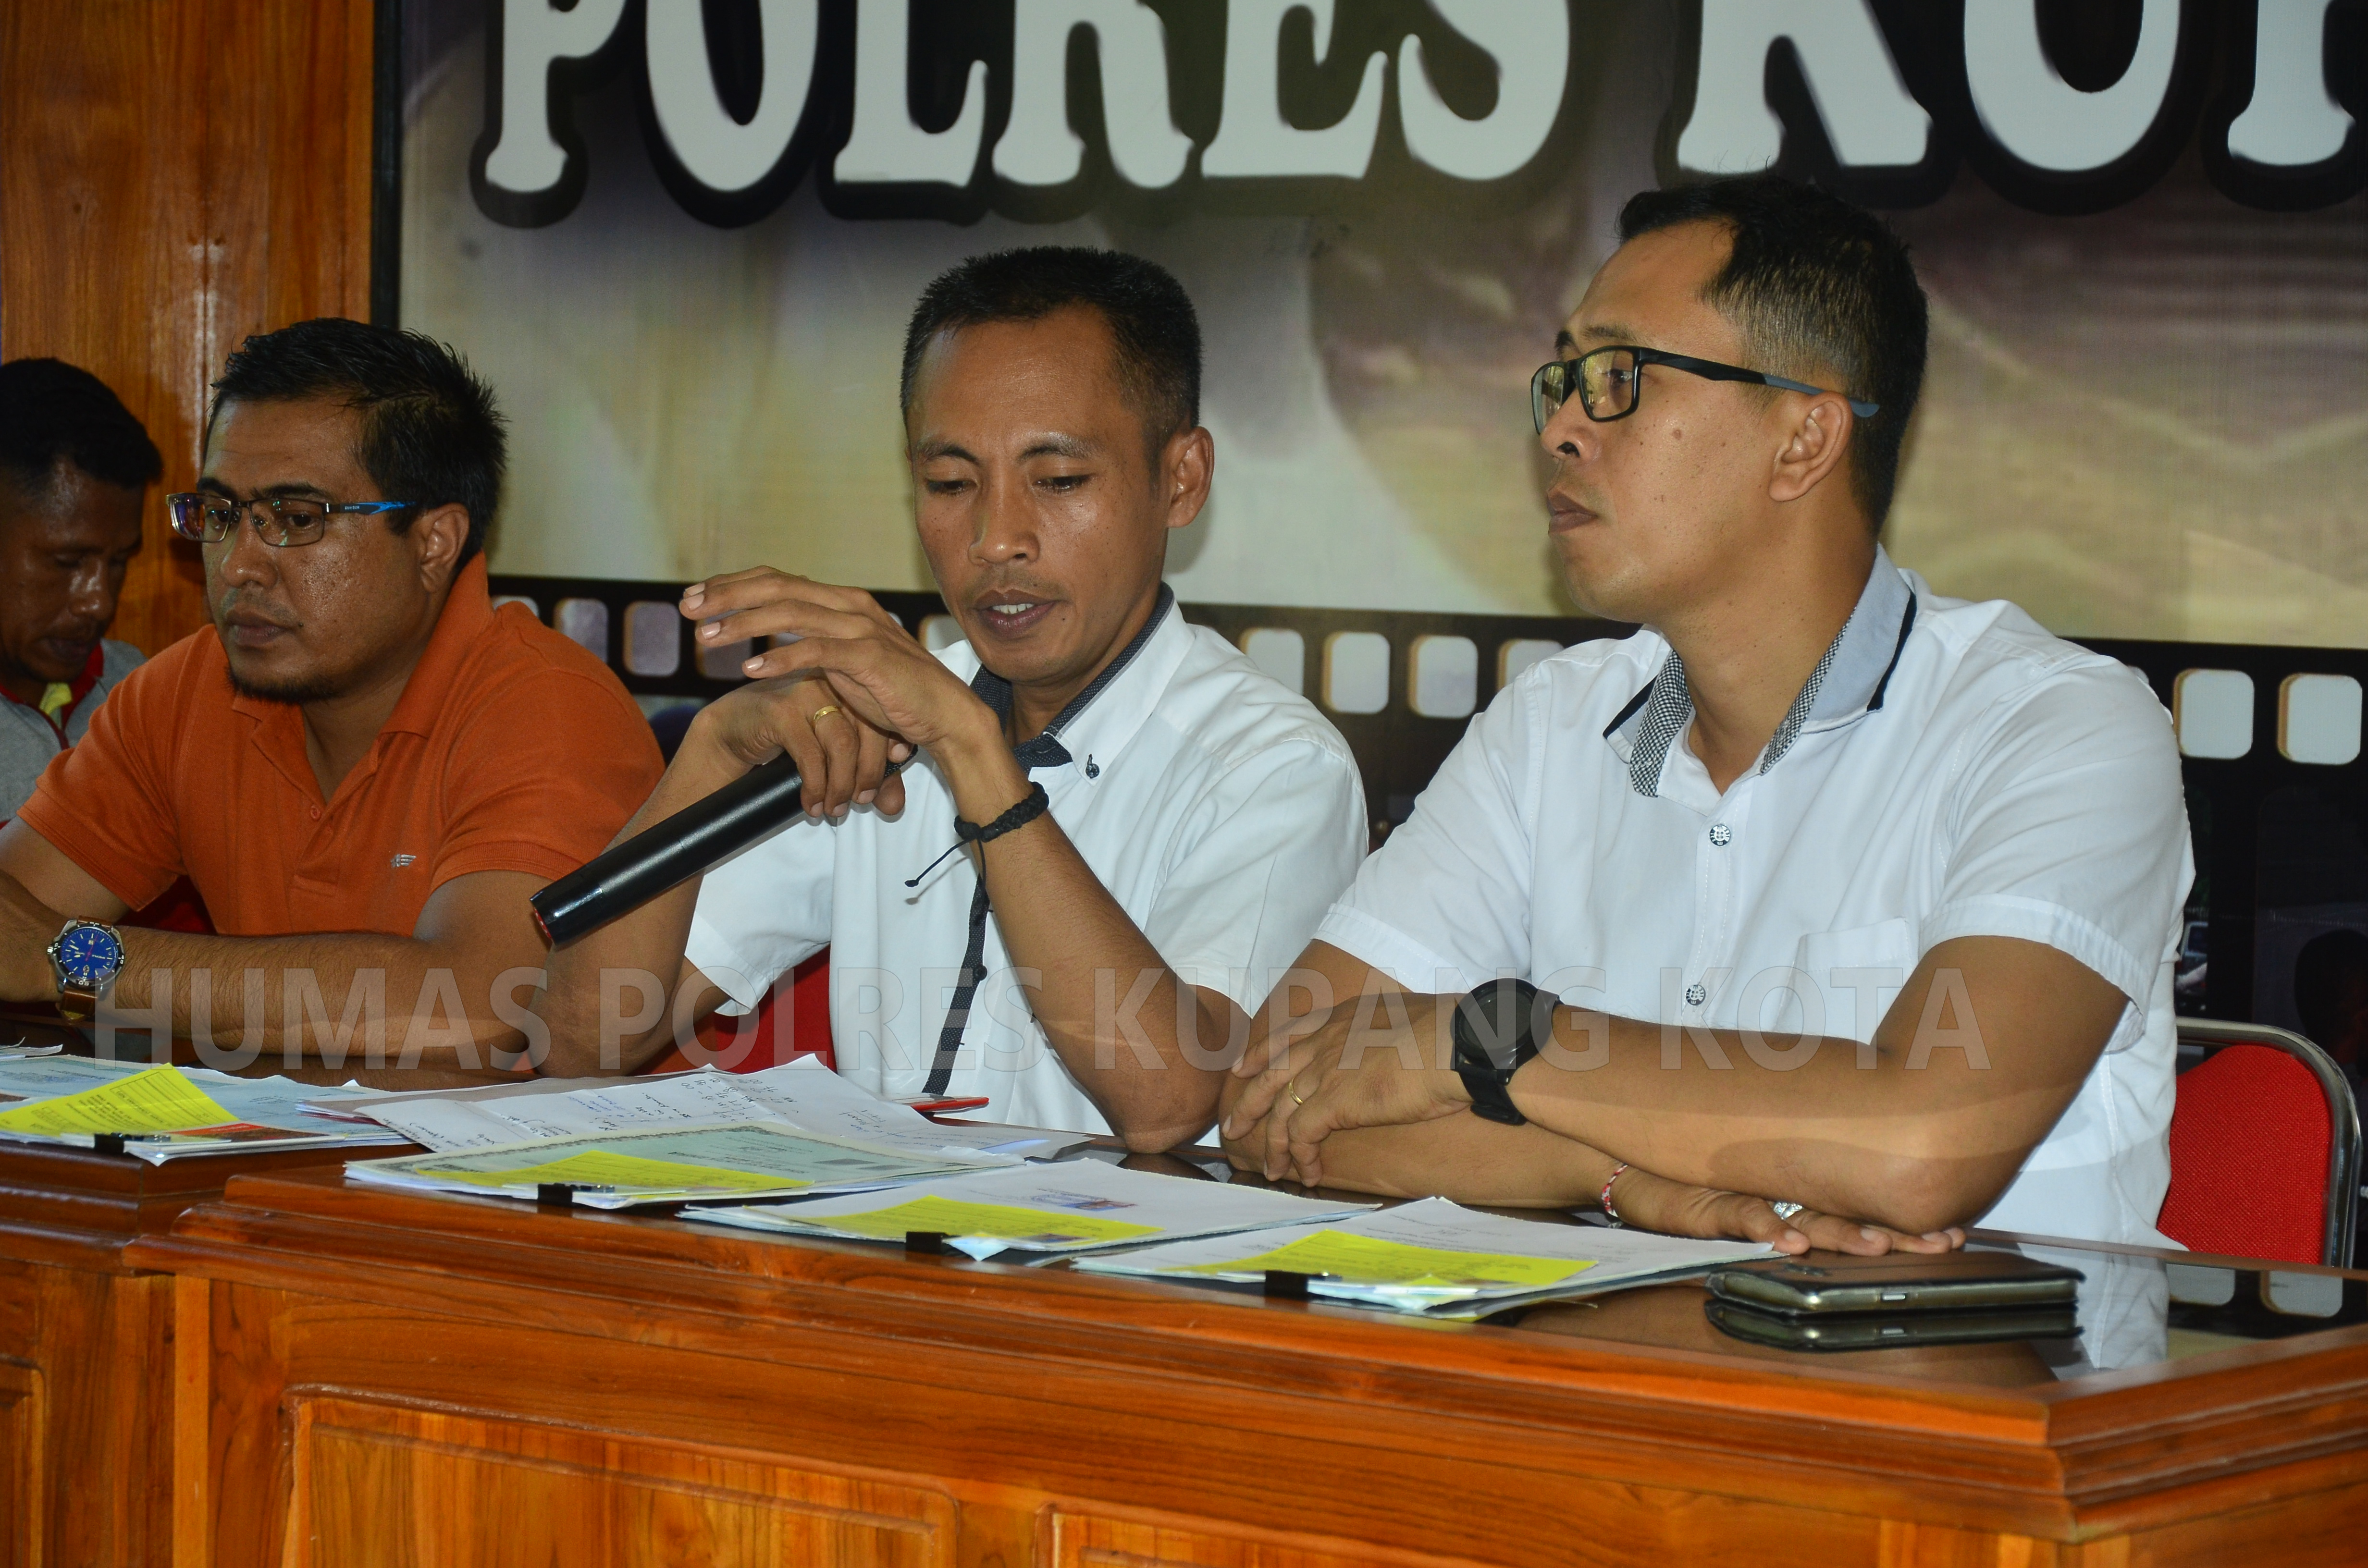 Identitas dipalsukan,31 calon TKW  Diamankan Satreskrim Polres Kupang Kota